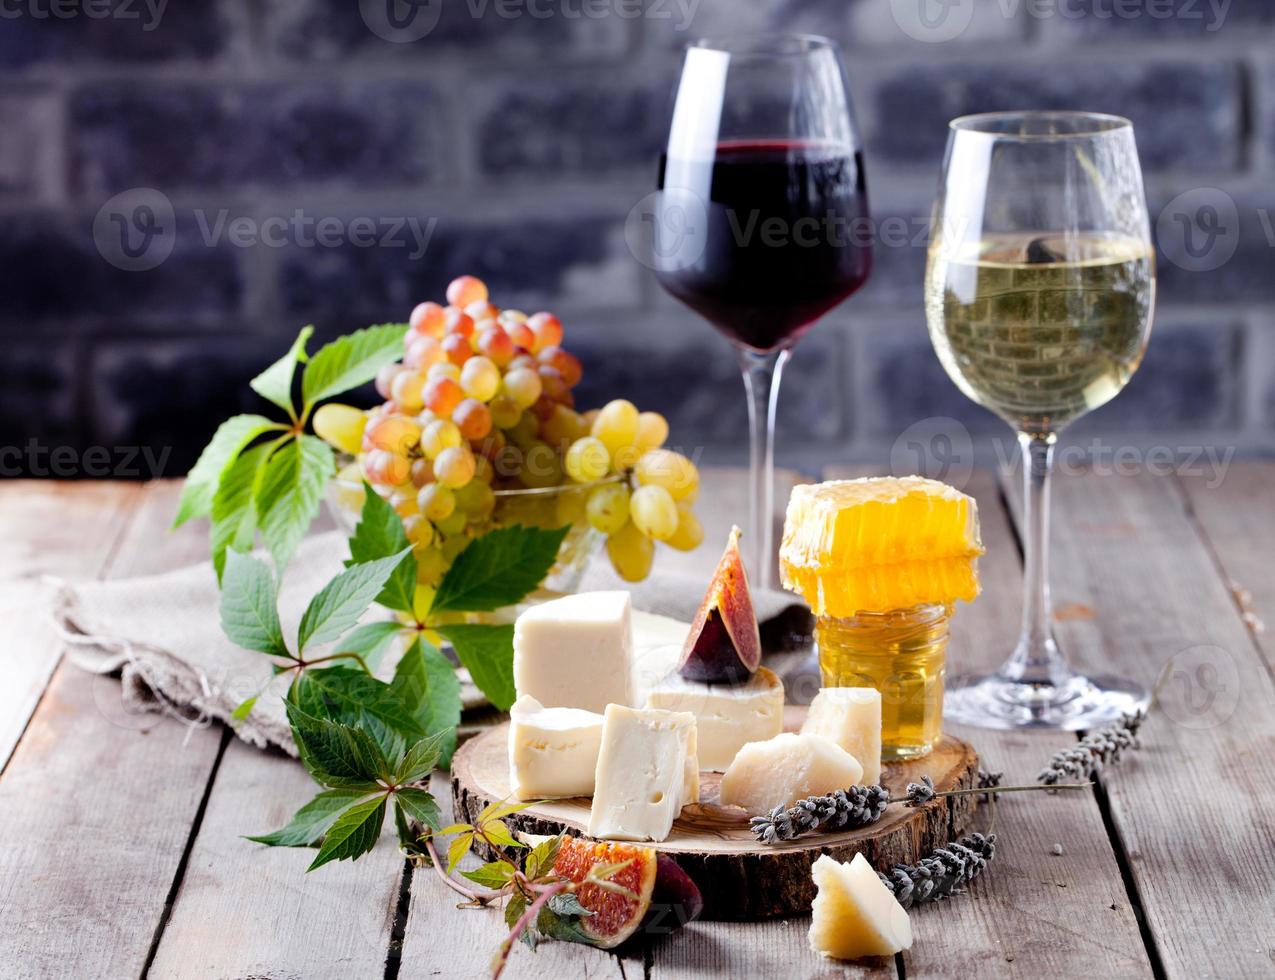 Käseteller mit Honig, Traube, Wein in Gläsern foto